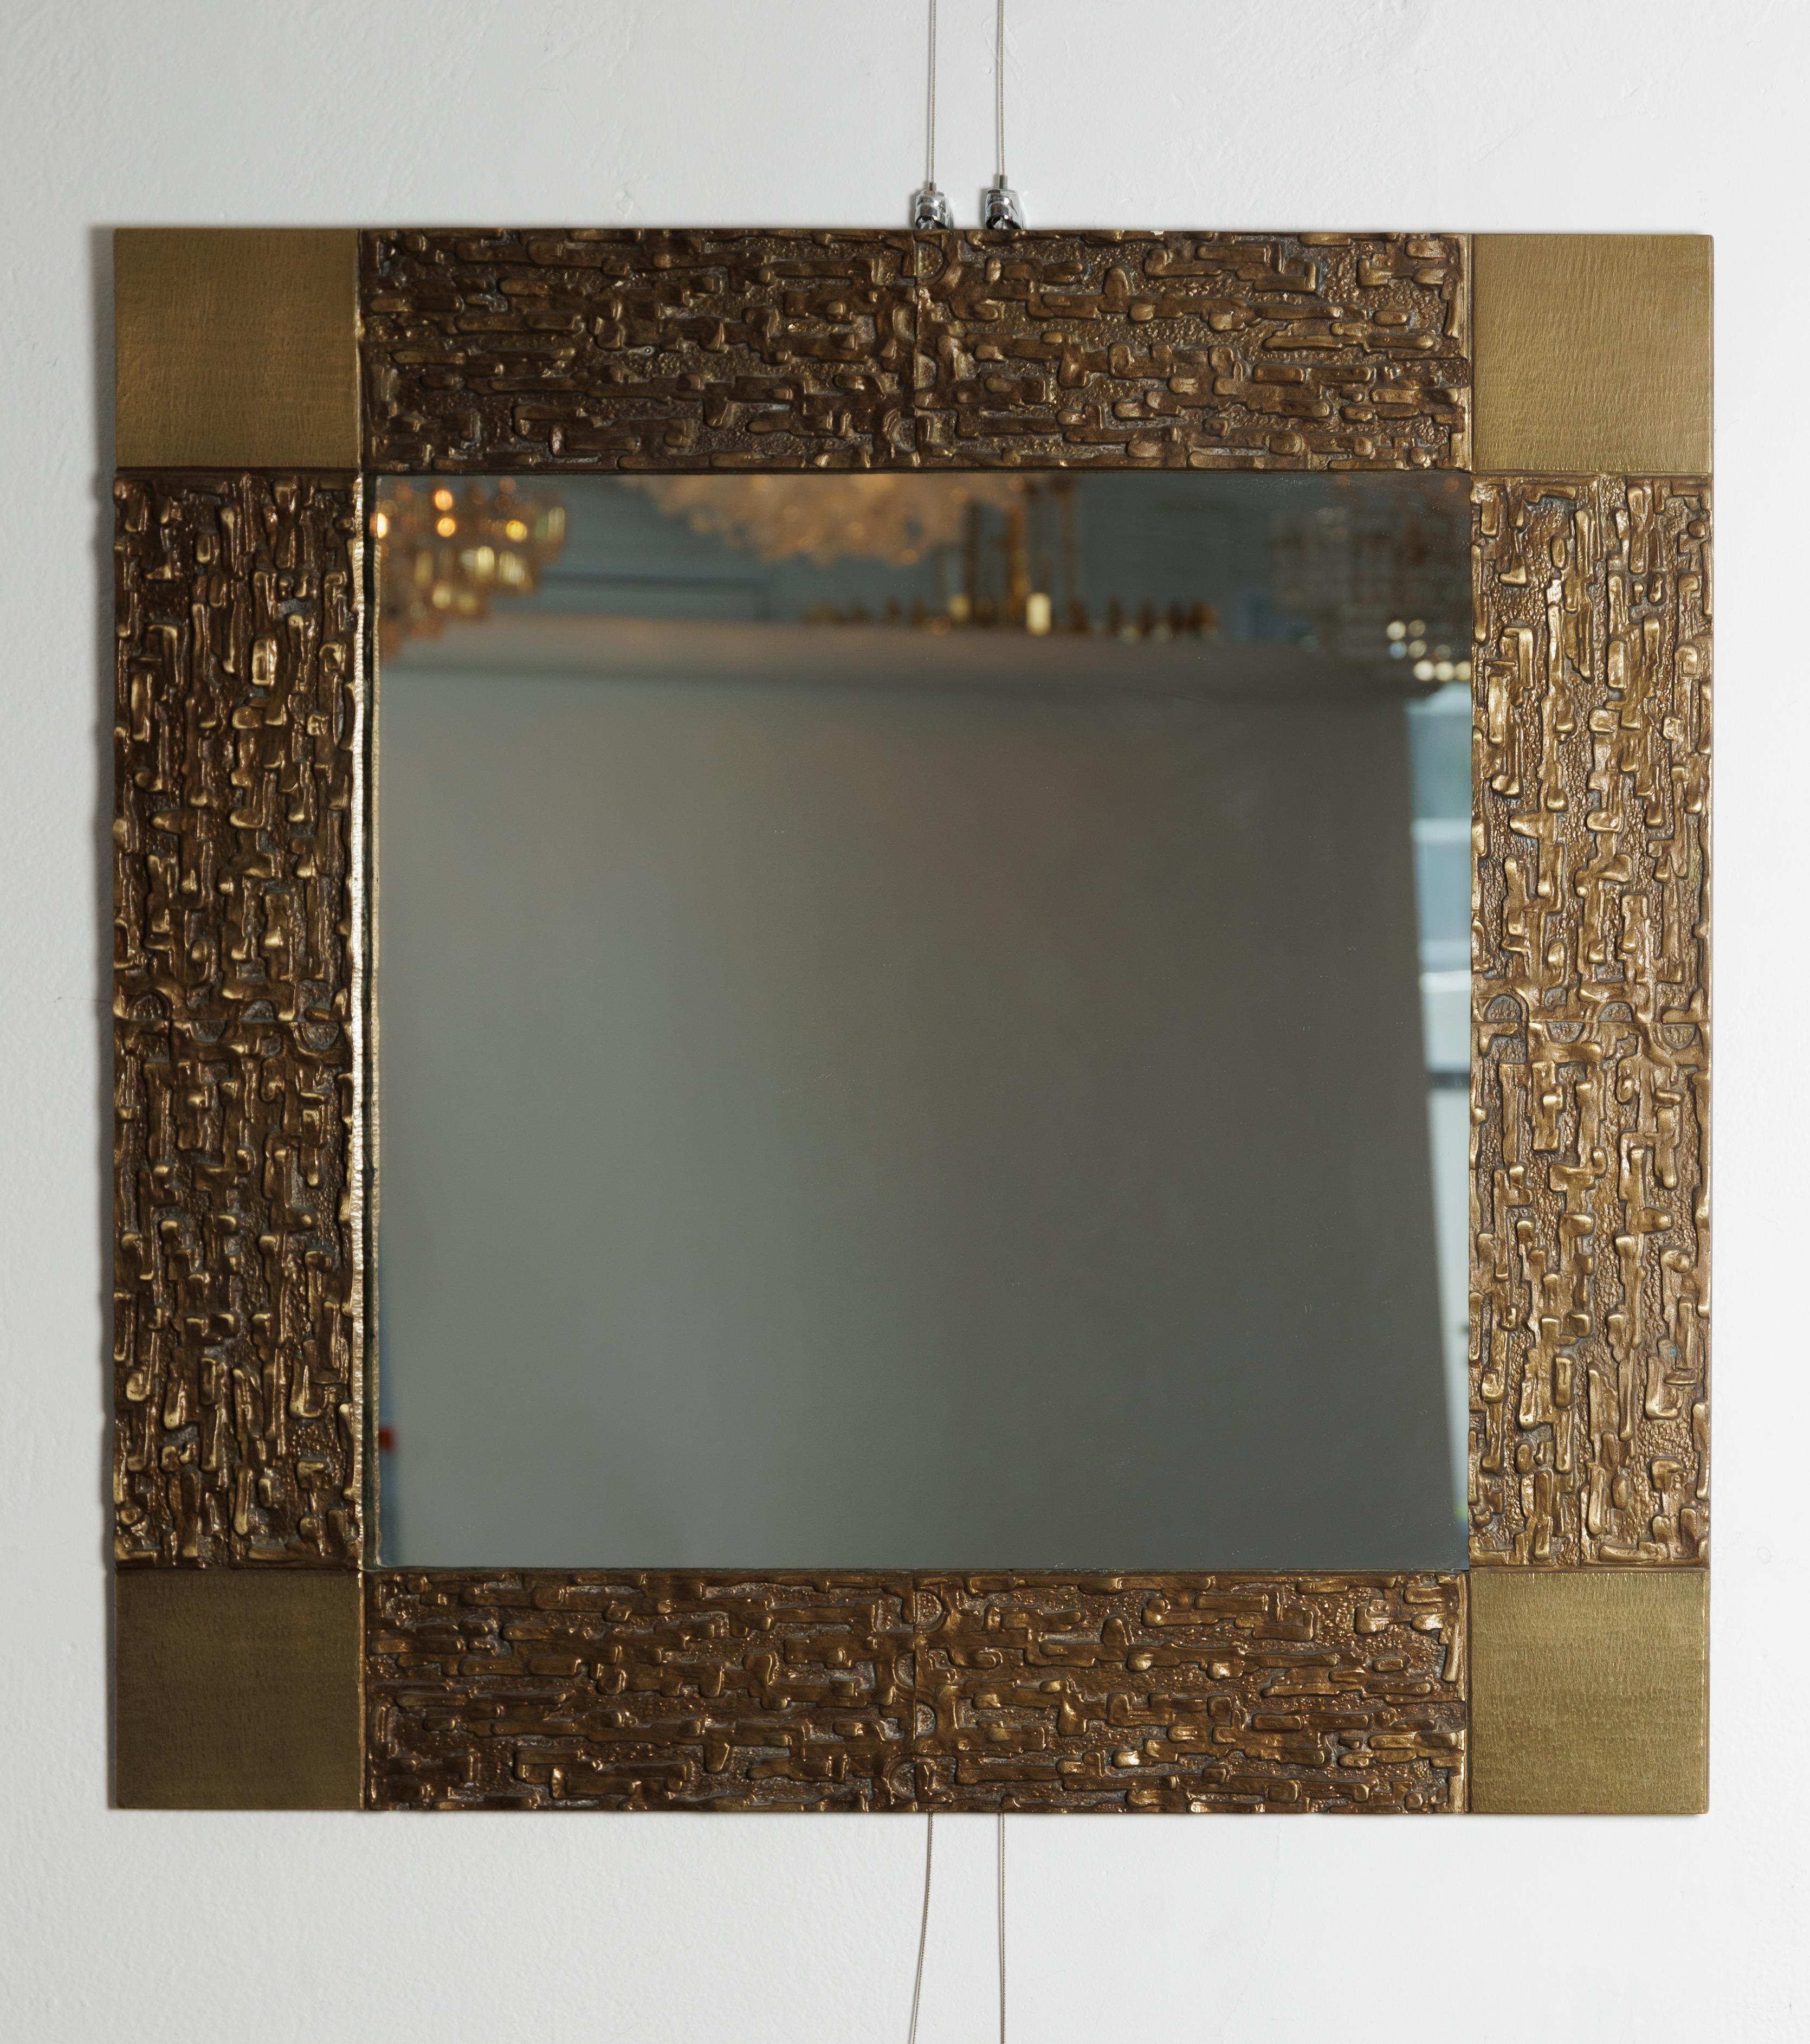 Miroir carré entouré de bronze avec des détails sculpturaux.
Attribué à, Frigerio.